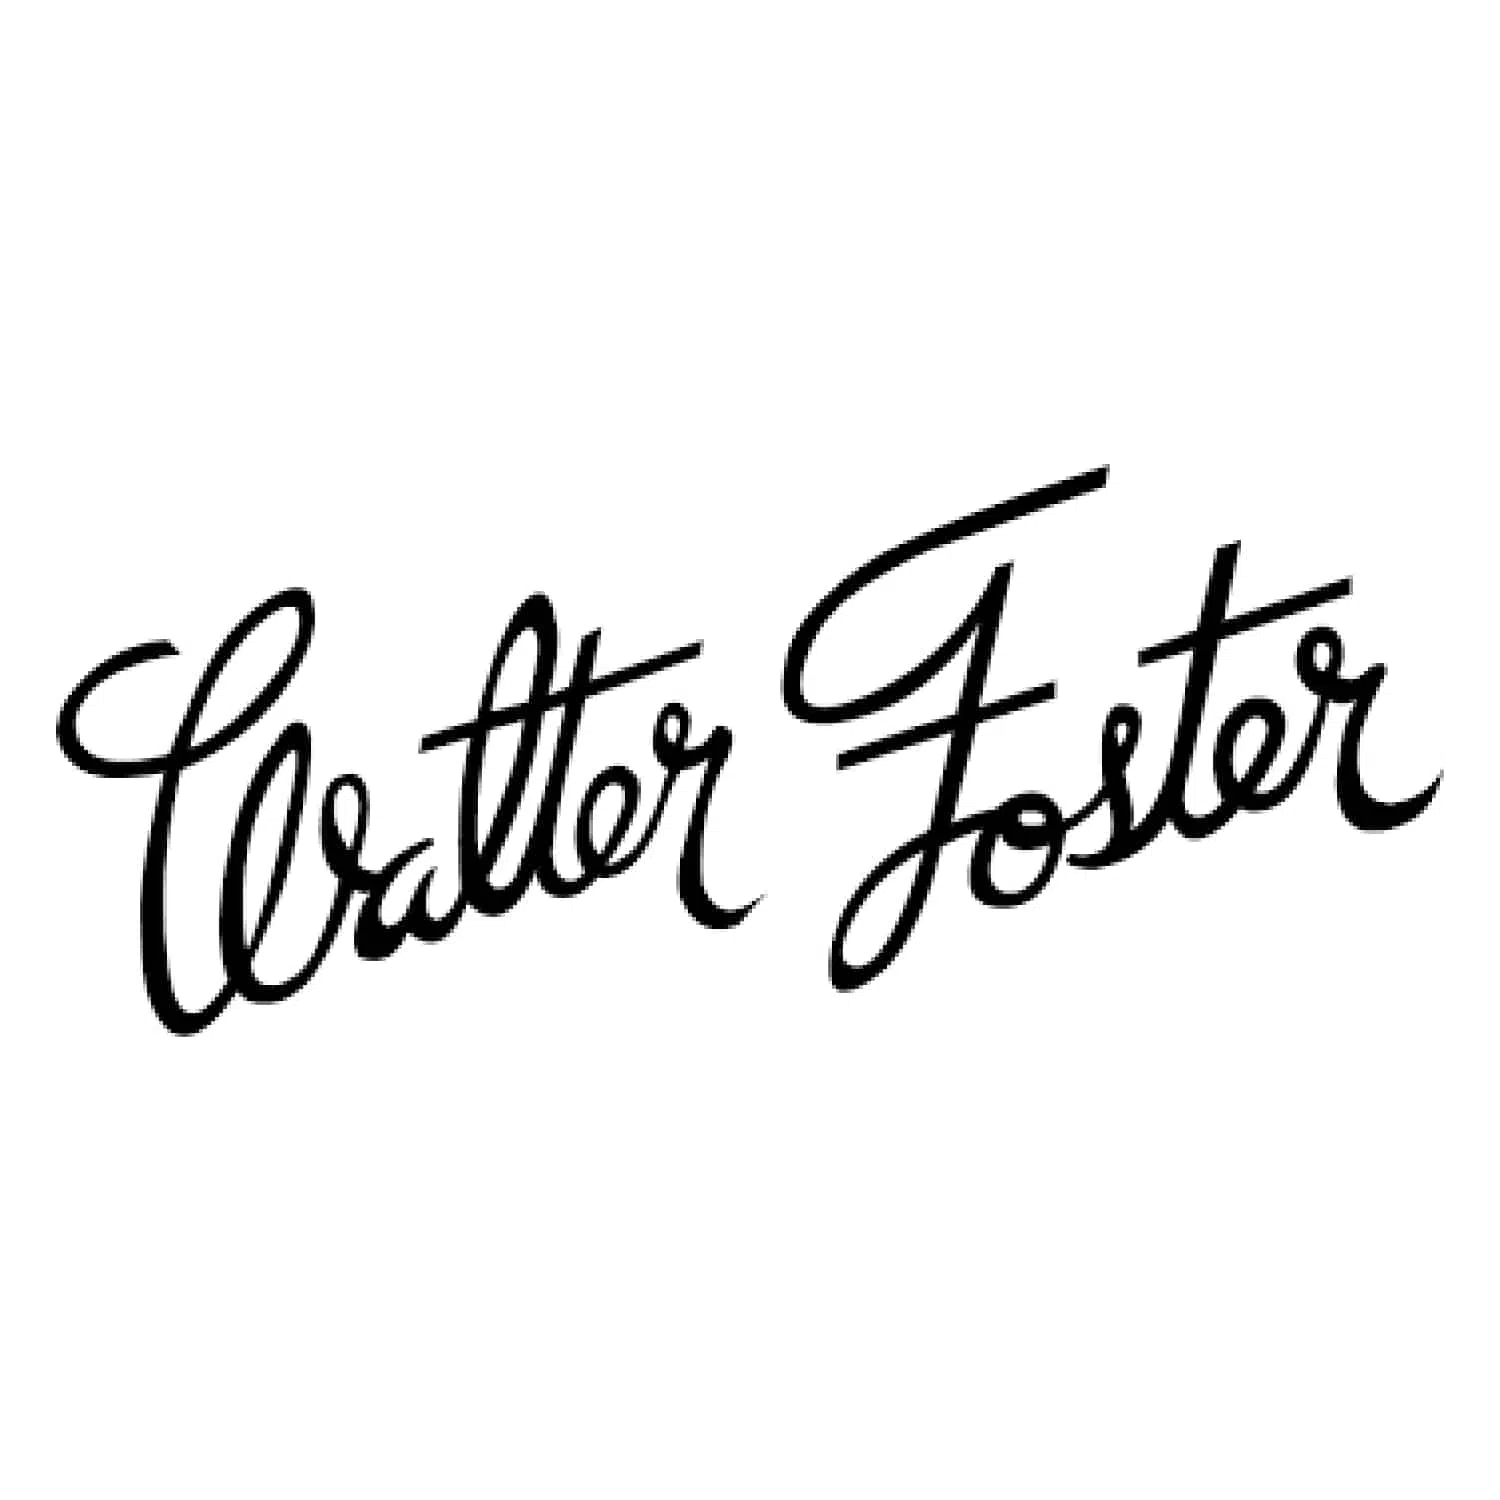 Walter Foster Jr.